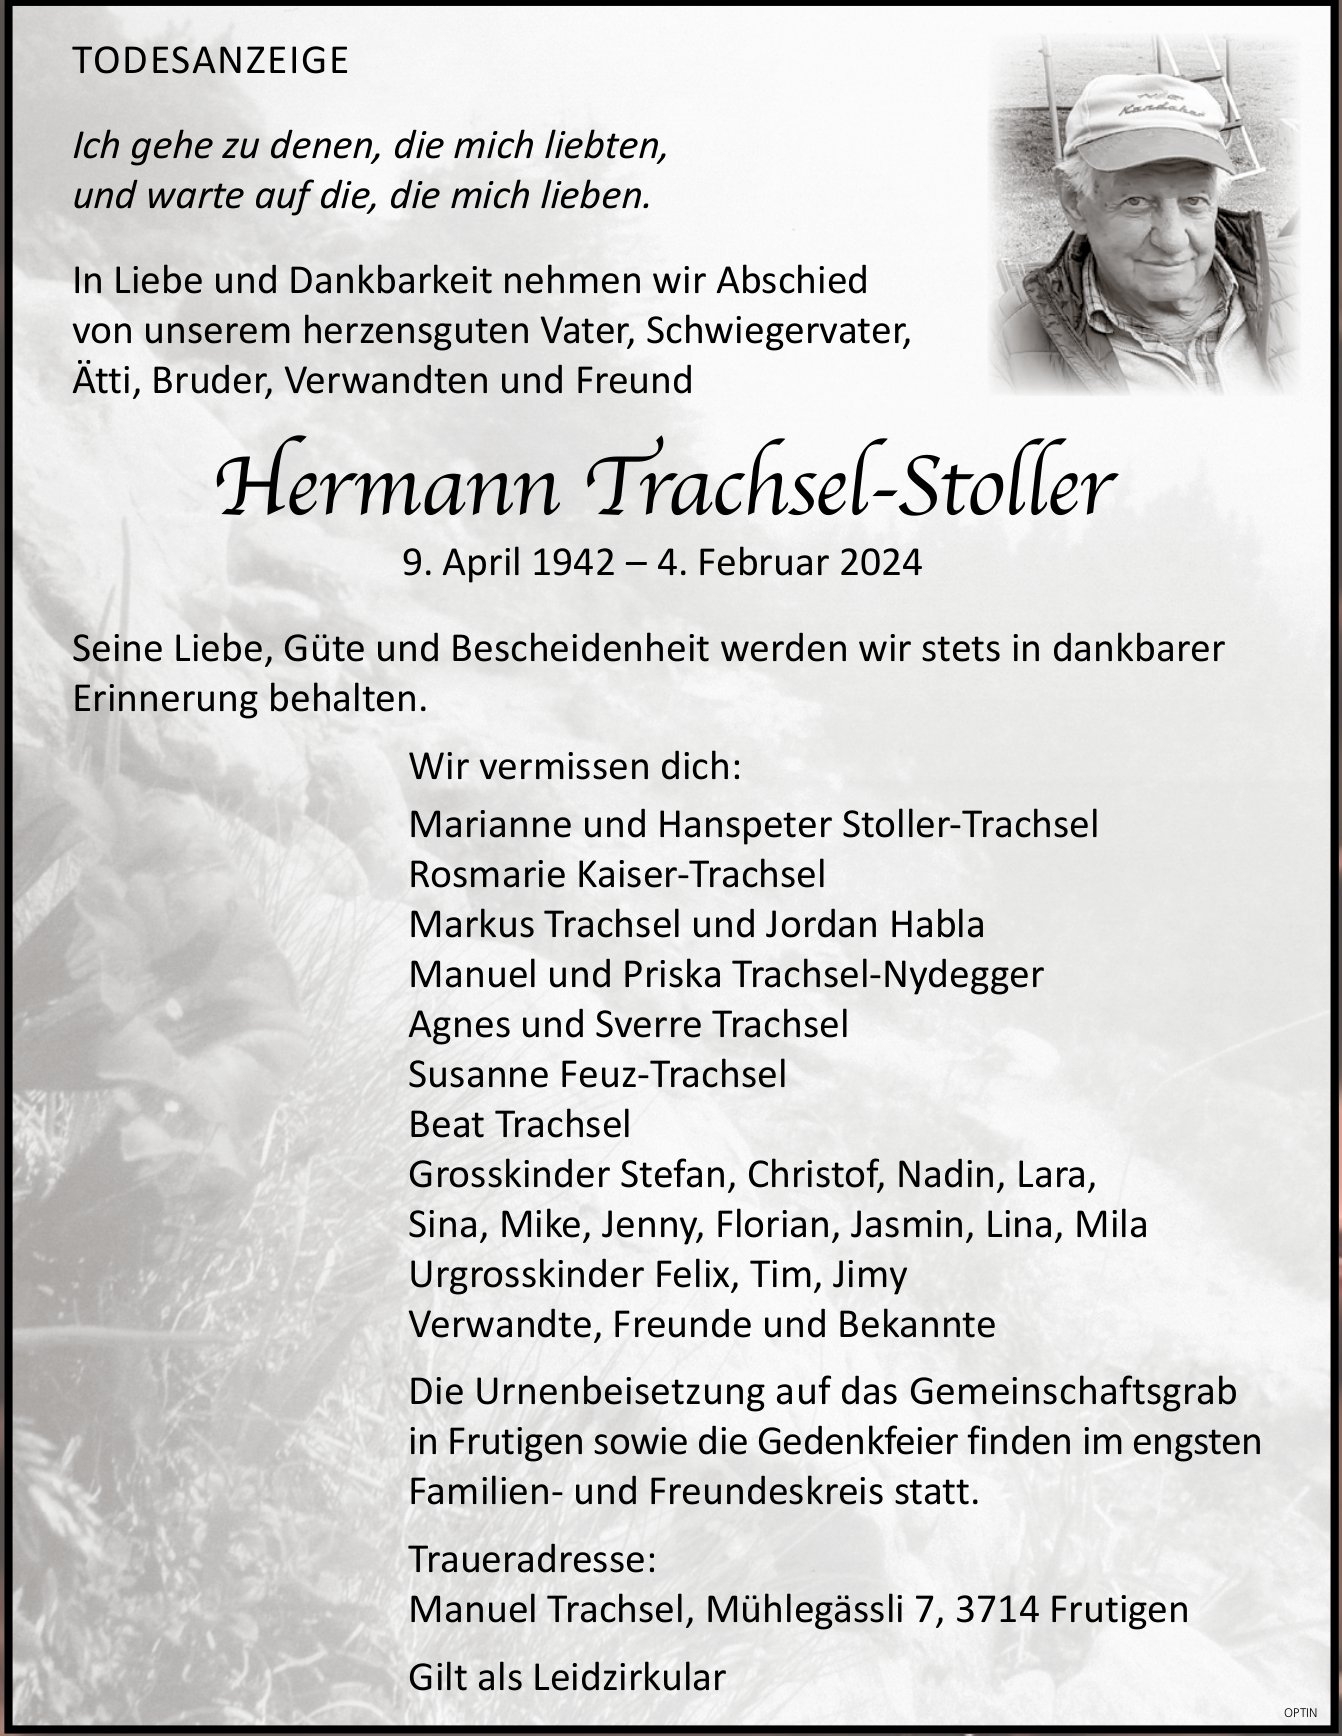 Hermann Trachsel-Stoller, Februar 2024 / TA